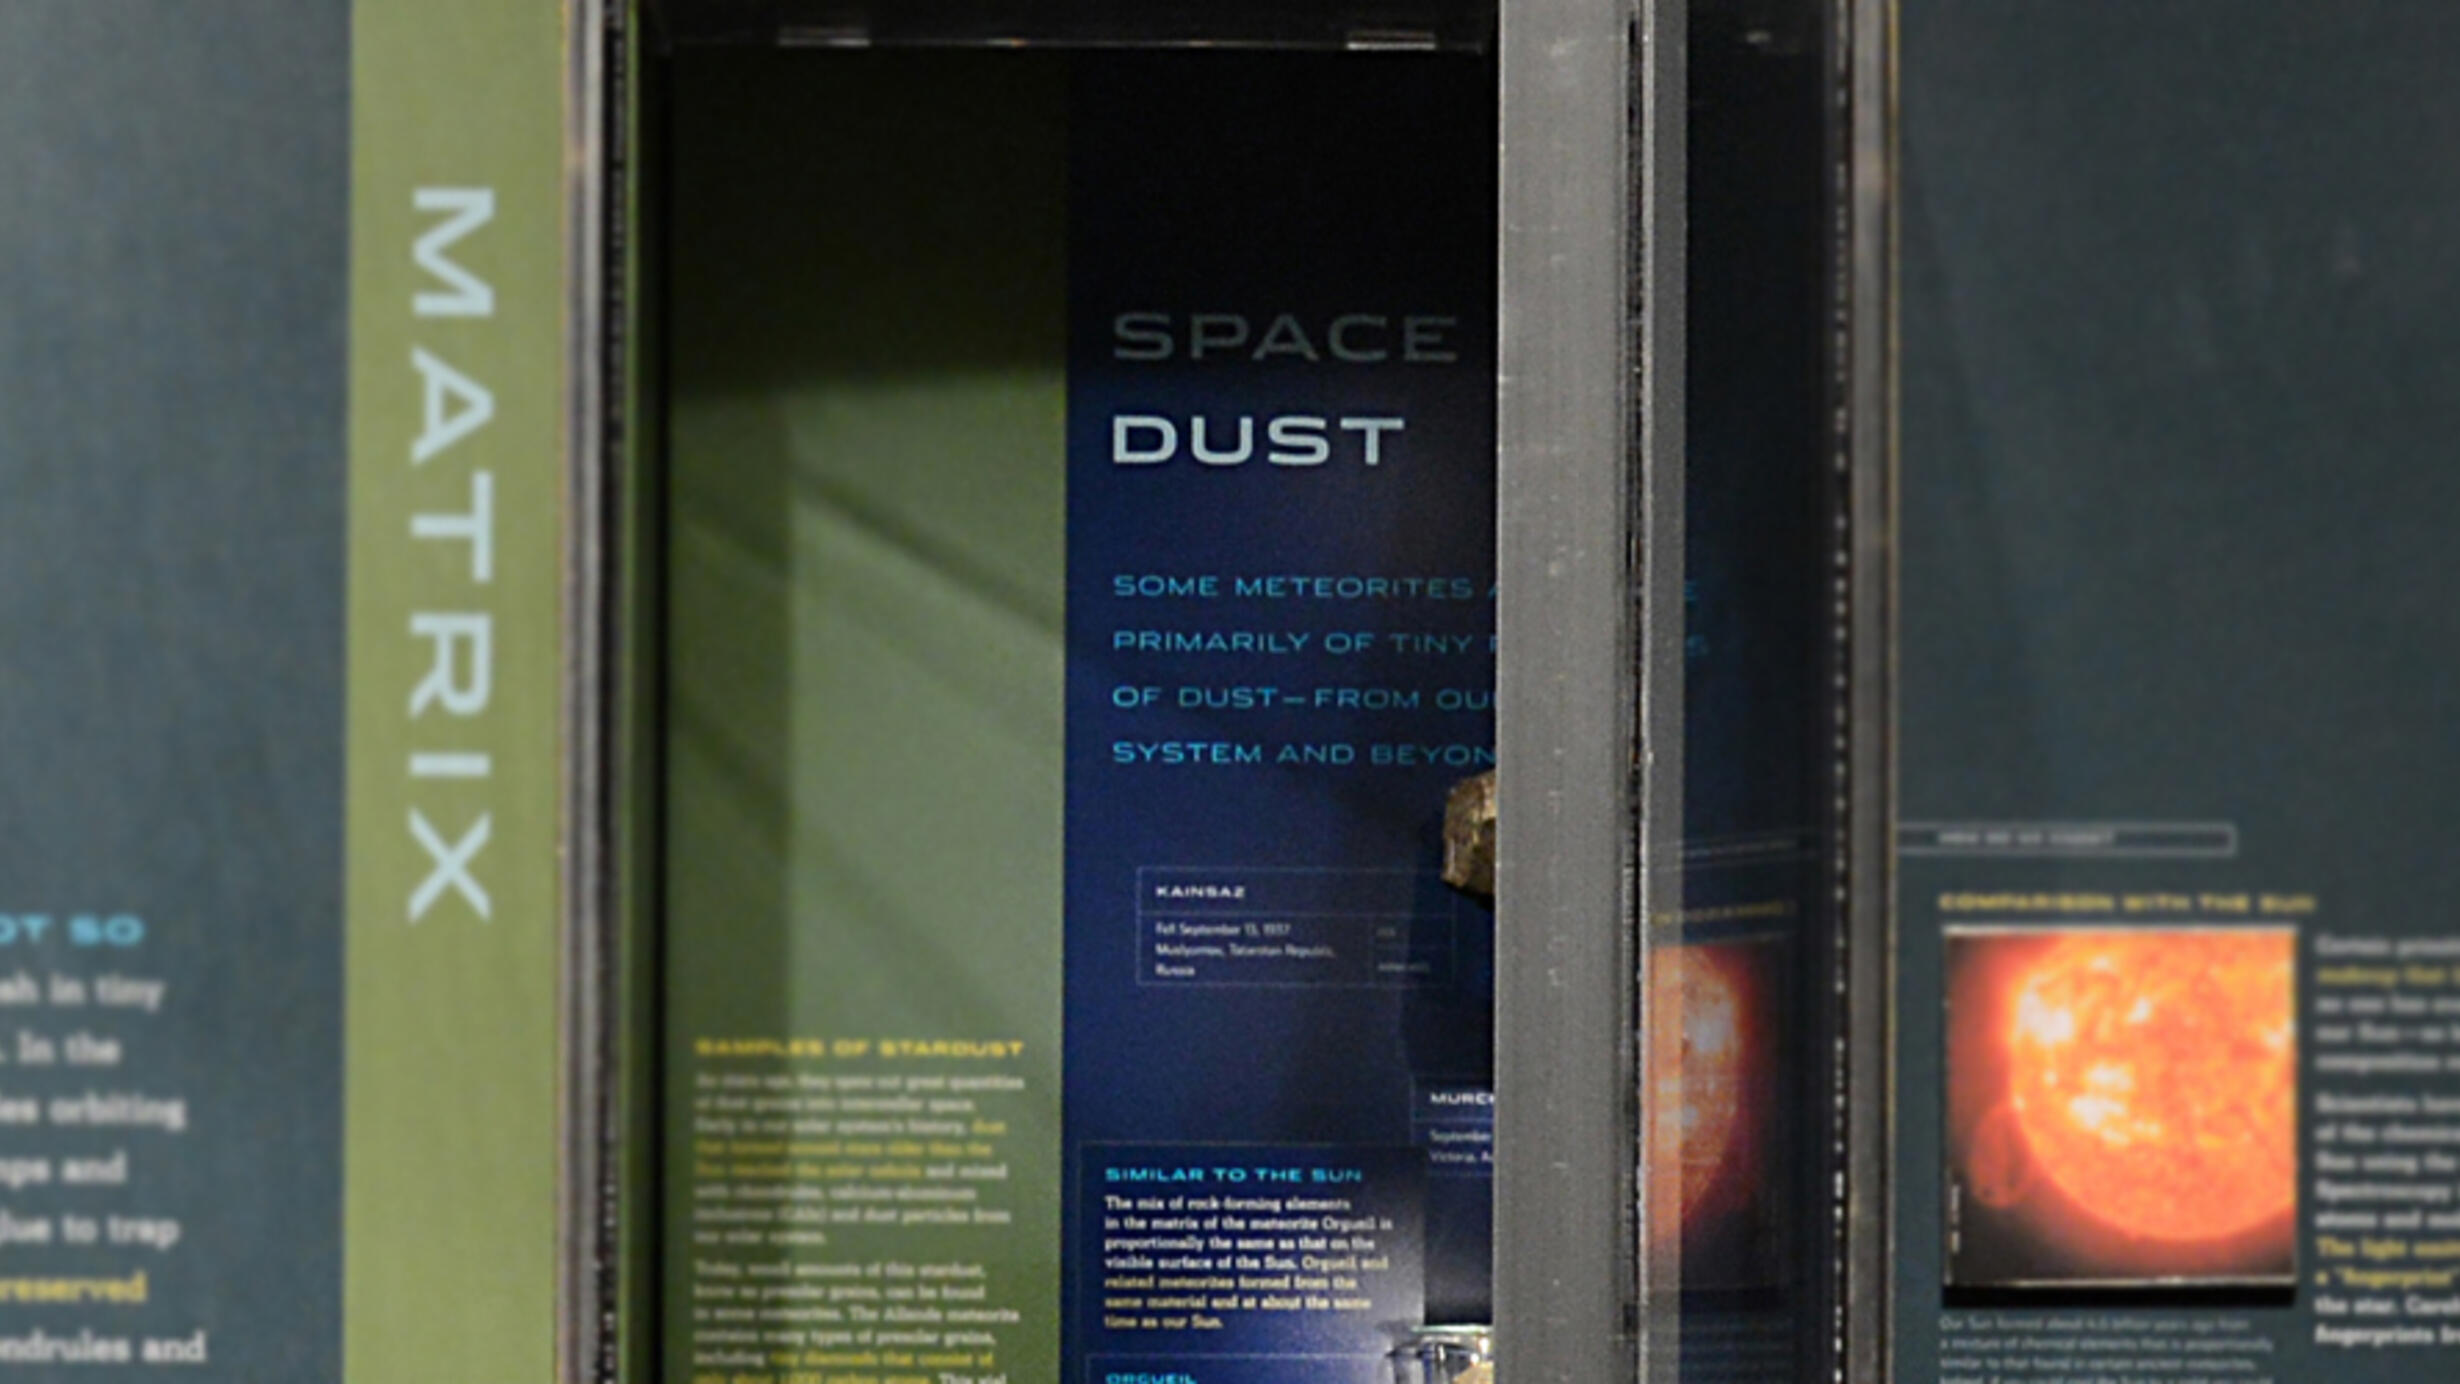 B.4.2. Space dust hero